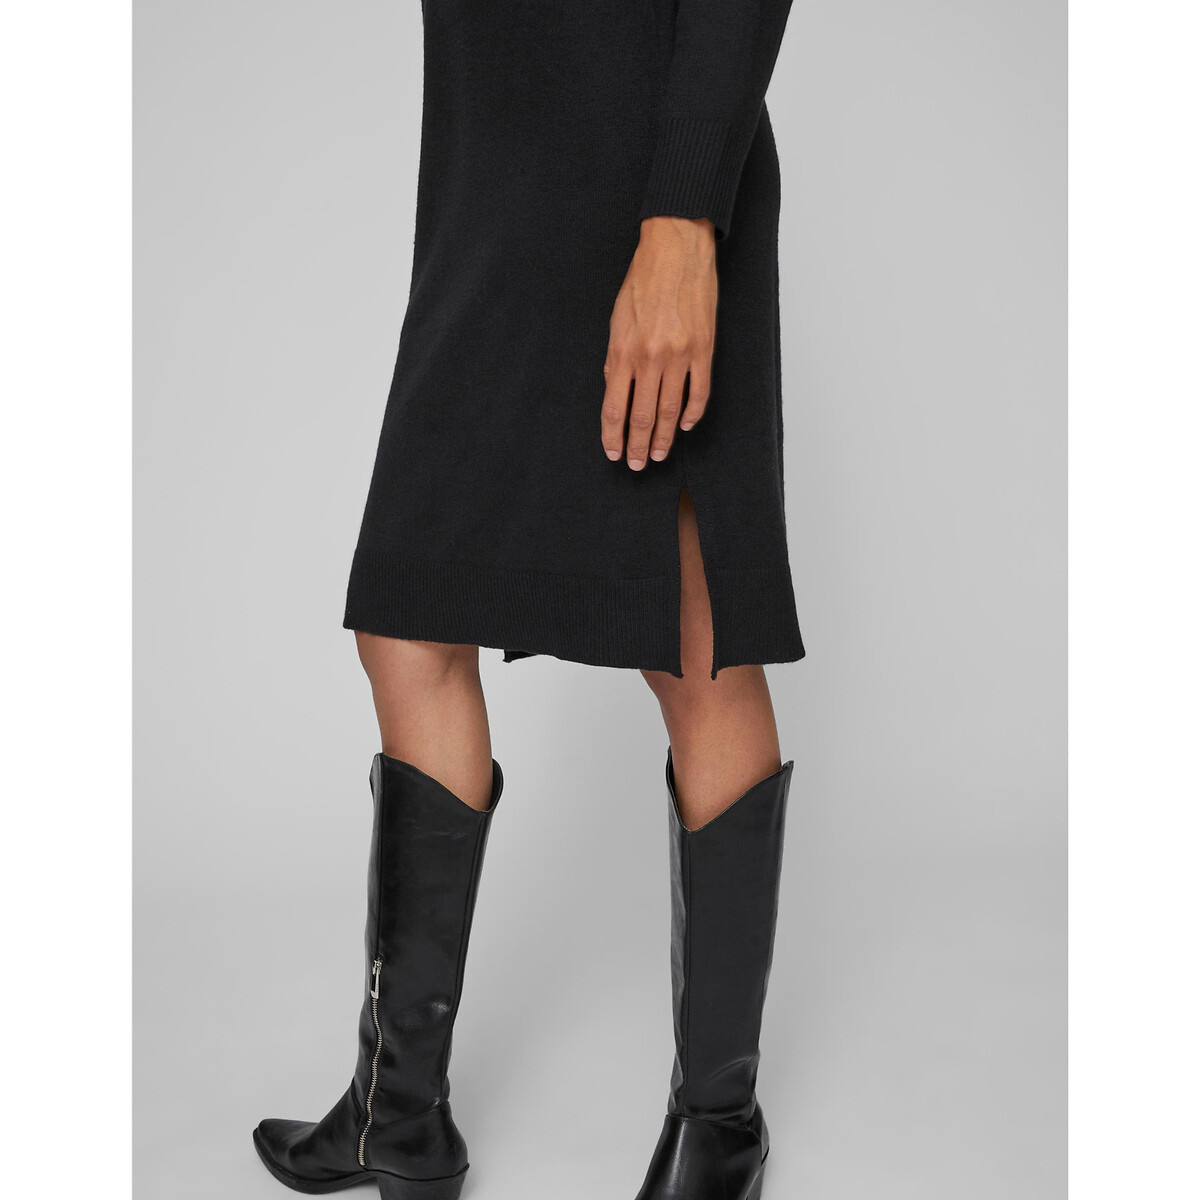 Платье-пуловер Миди из тонкого трикотажа воротник-стойка XL черный LaRedoute, размер XL - фото 4